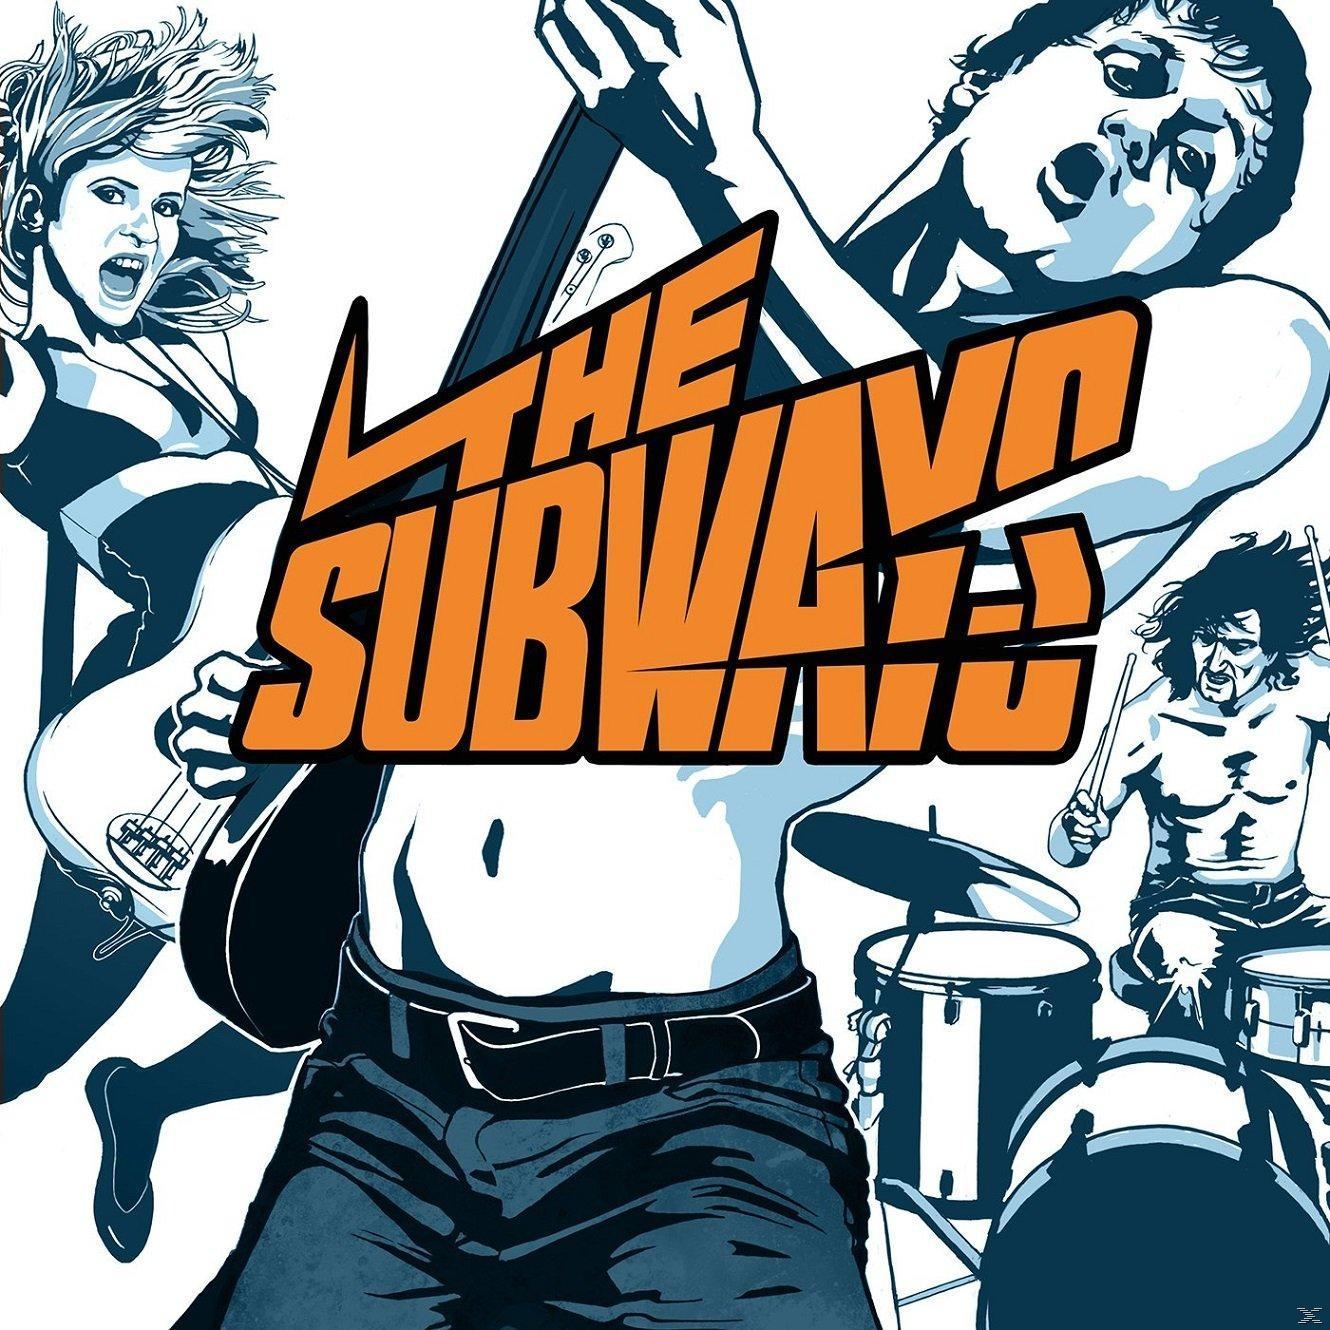 The Subways - The Subways - (CD Merchandising) 